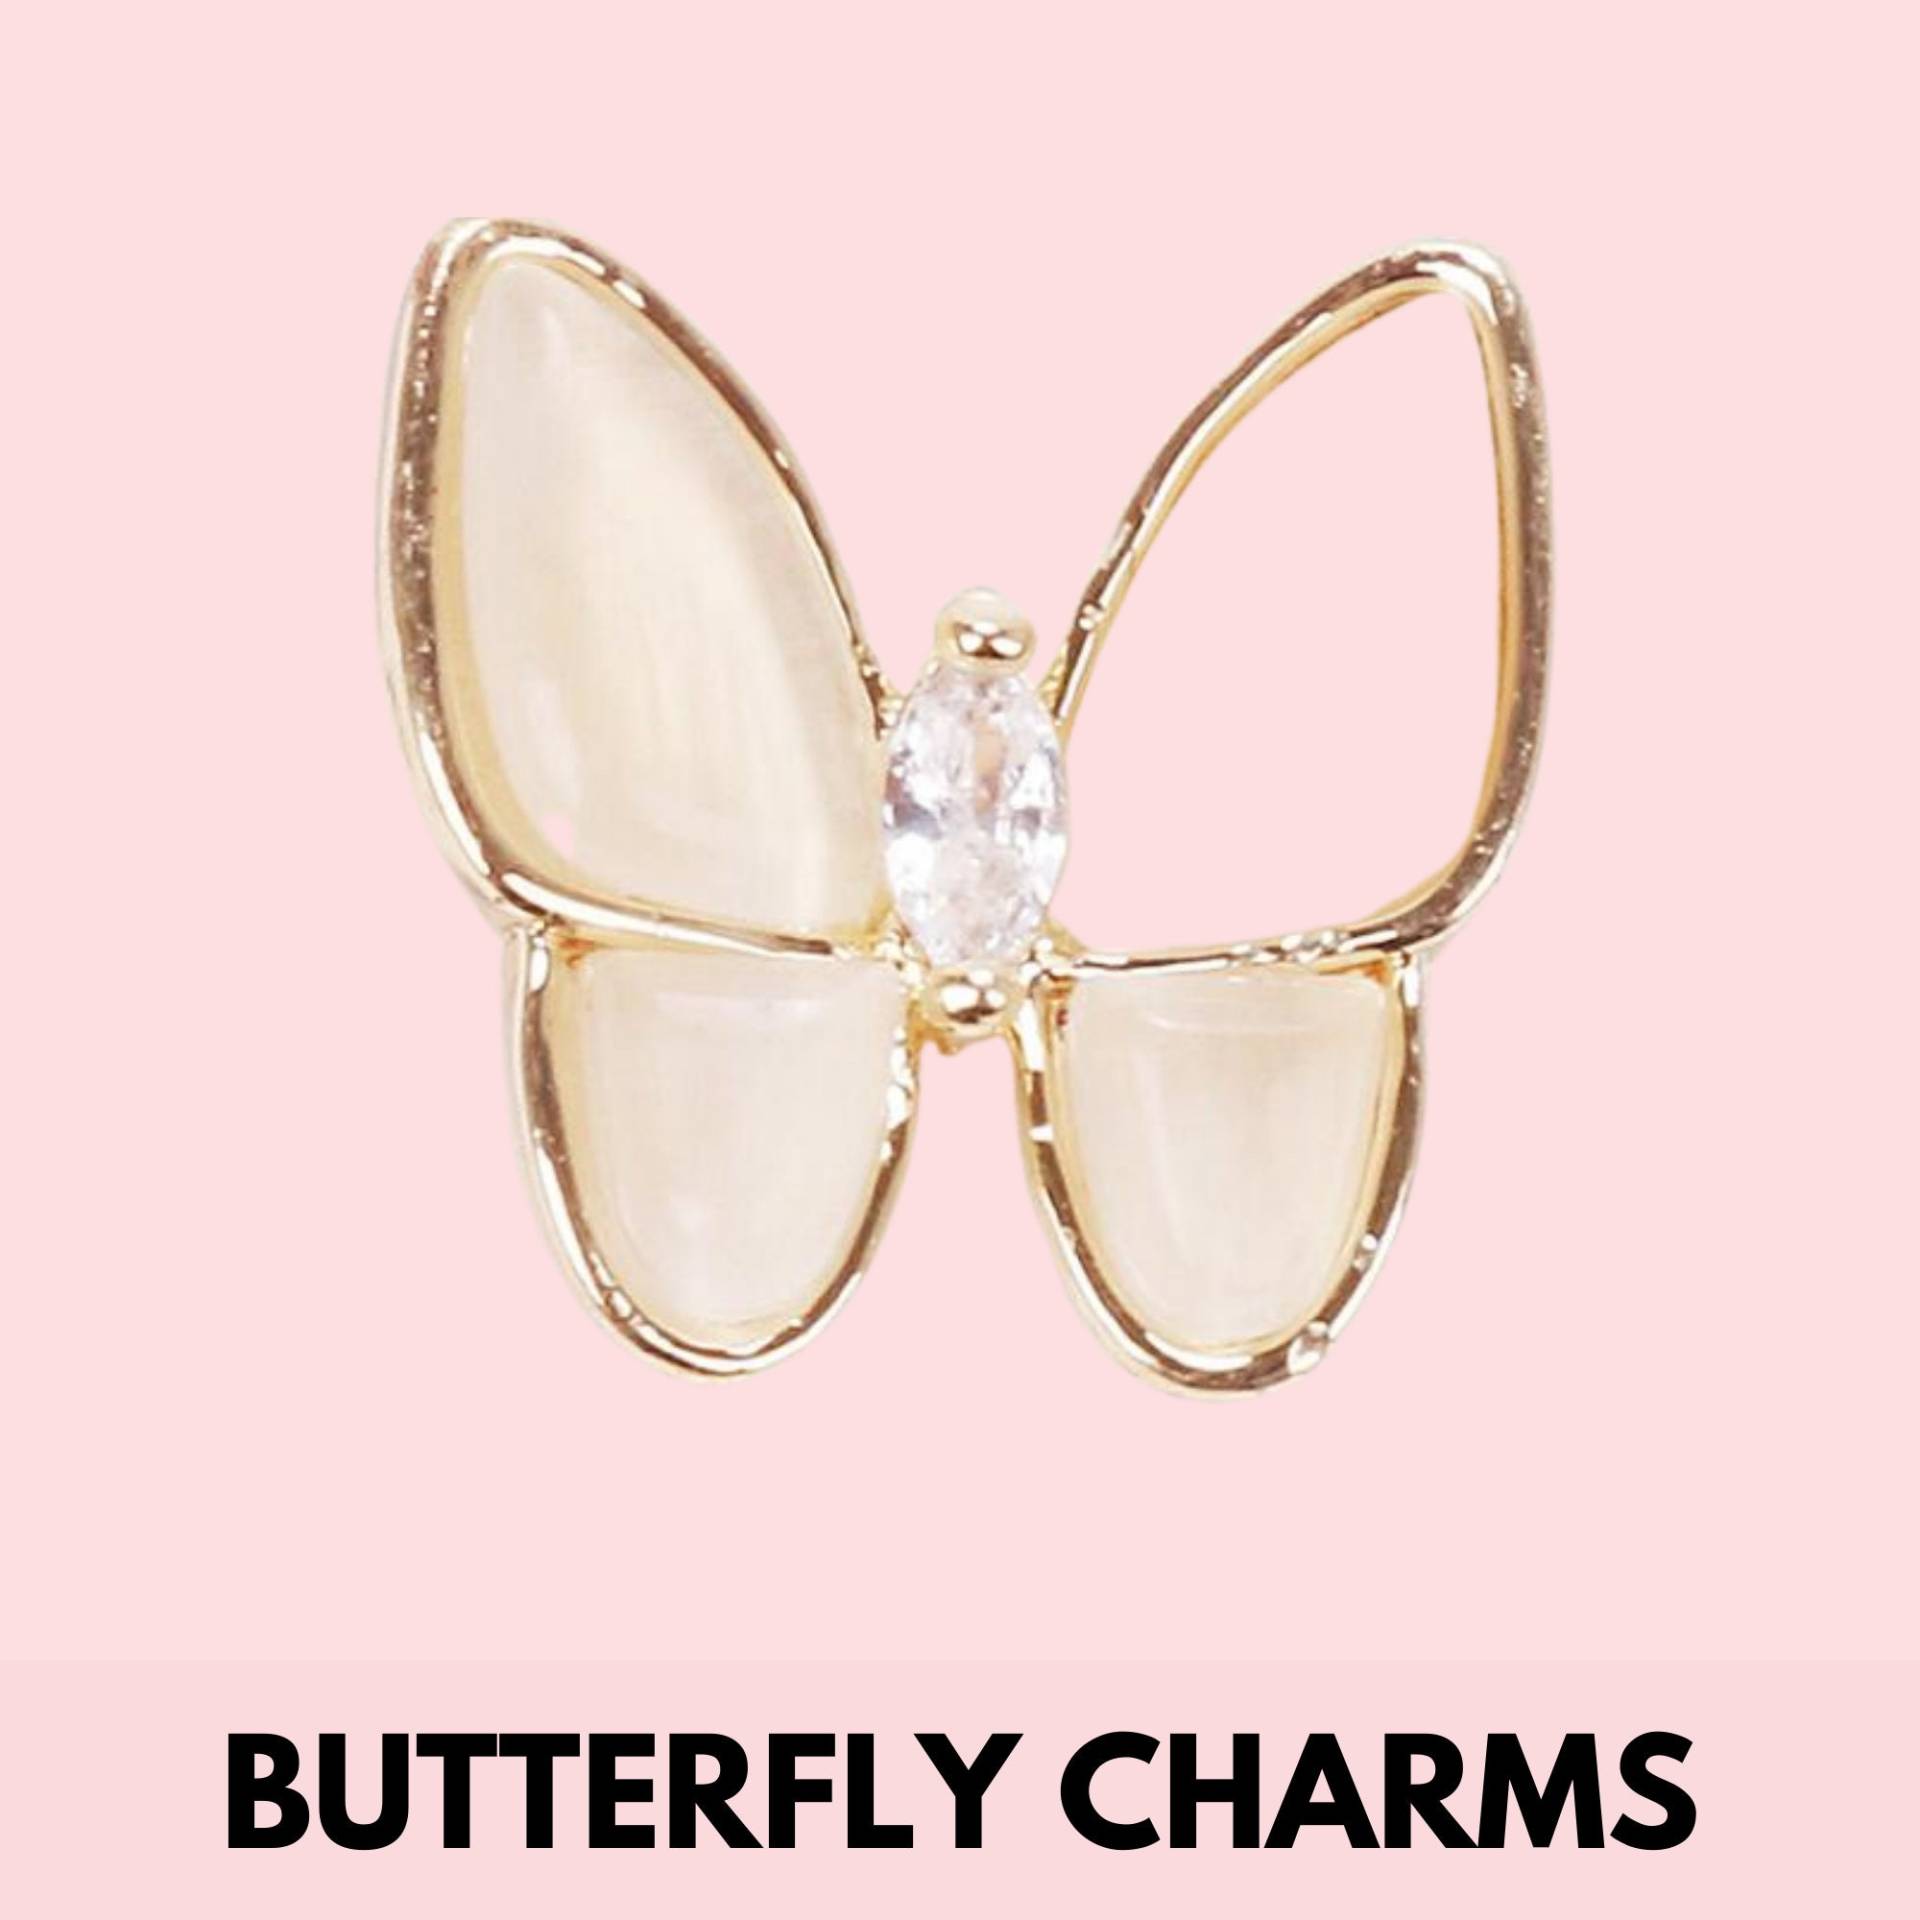 Schmetterling Charms von TheNailChix